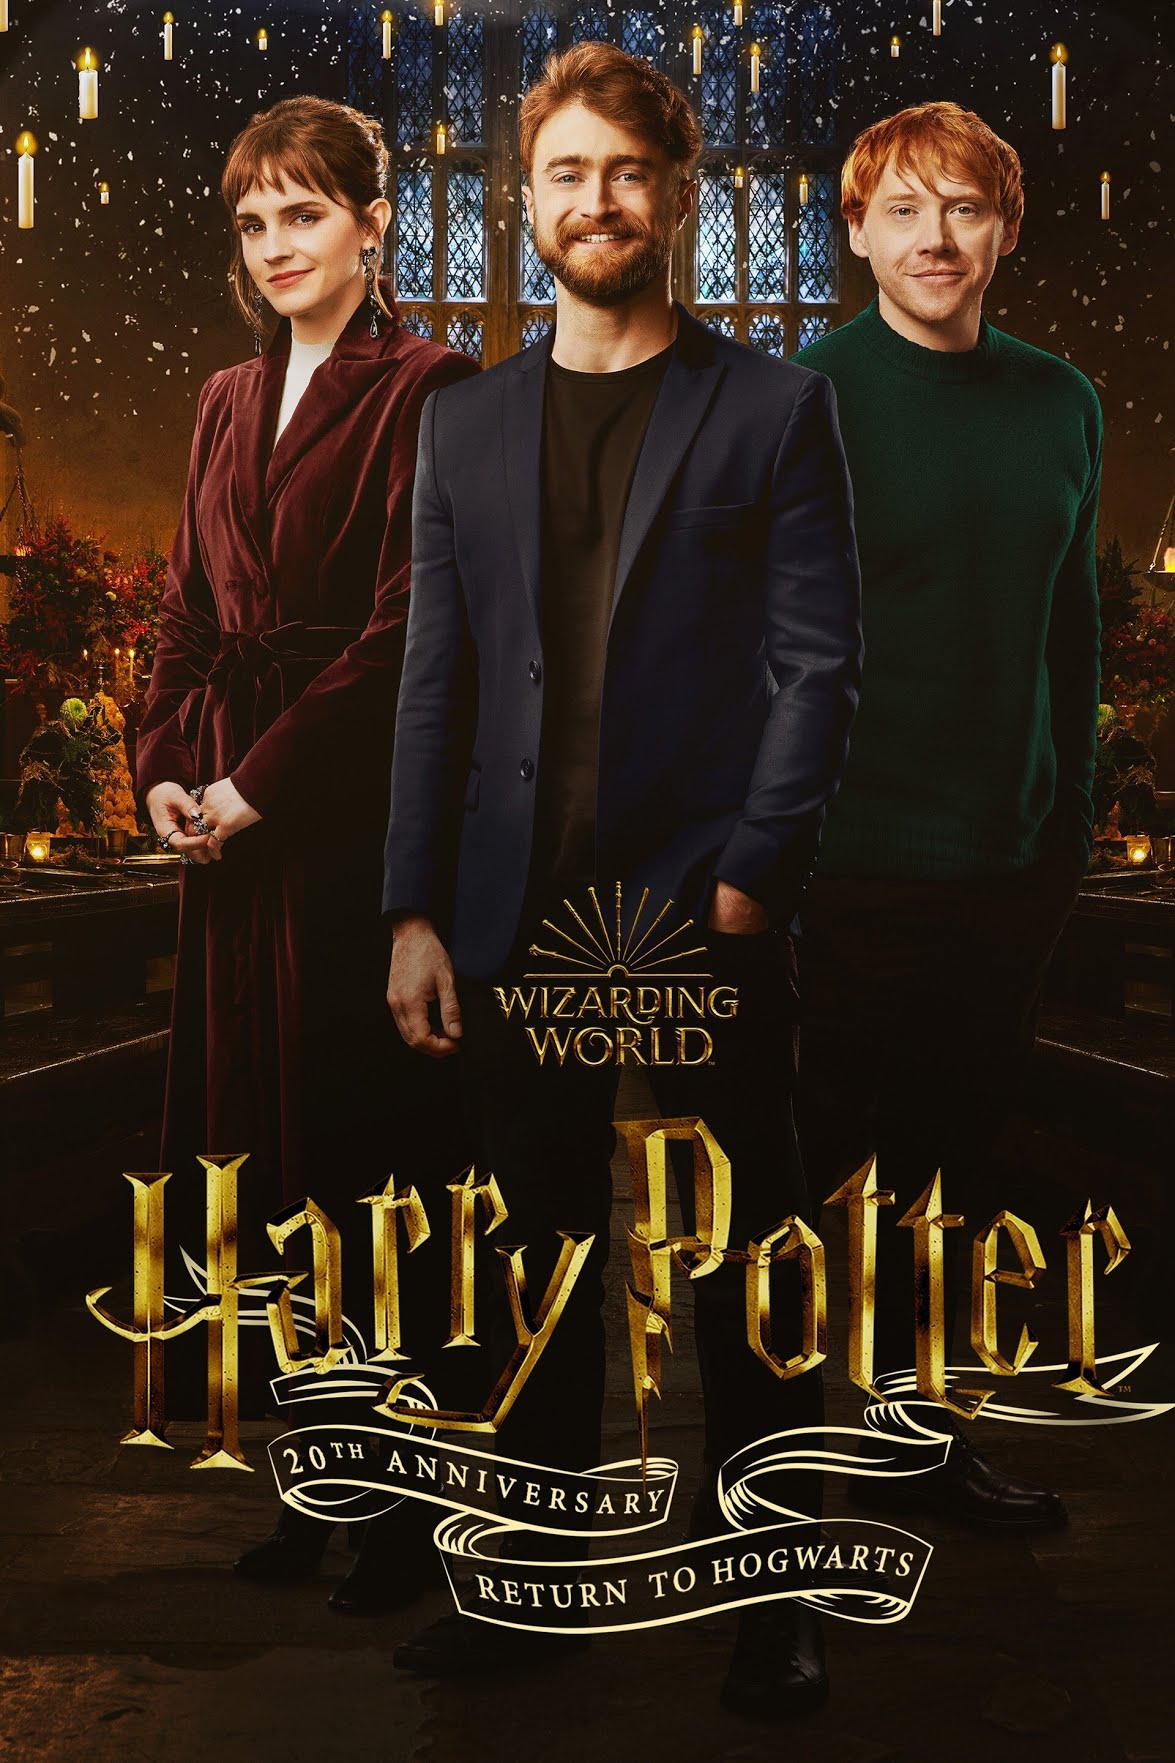 [ฝรั่ง] Harry Potter 20th Anniversary: Return to Hogwarts (2022) ครบรอบ 20 ปี แฮร์รี่ พอตเตอร์: คืนสู่เหย้าฮอกวอตส์ [1080p] [พากย์อังกฤษ 5.1] [Soundtrack บรรยายไทย + อังกฤษ] [เสียงอังกฤษ + ซับไทย] [USERLOAD]